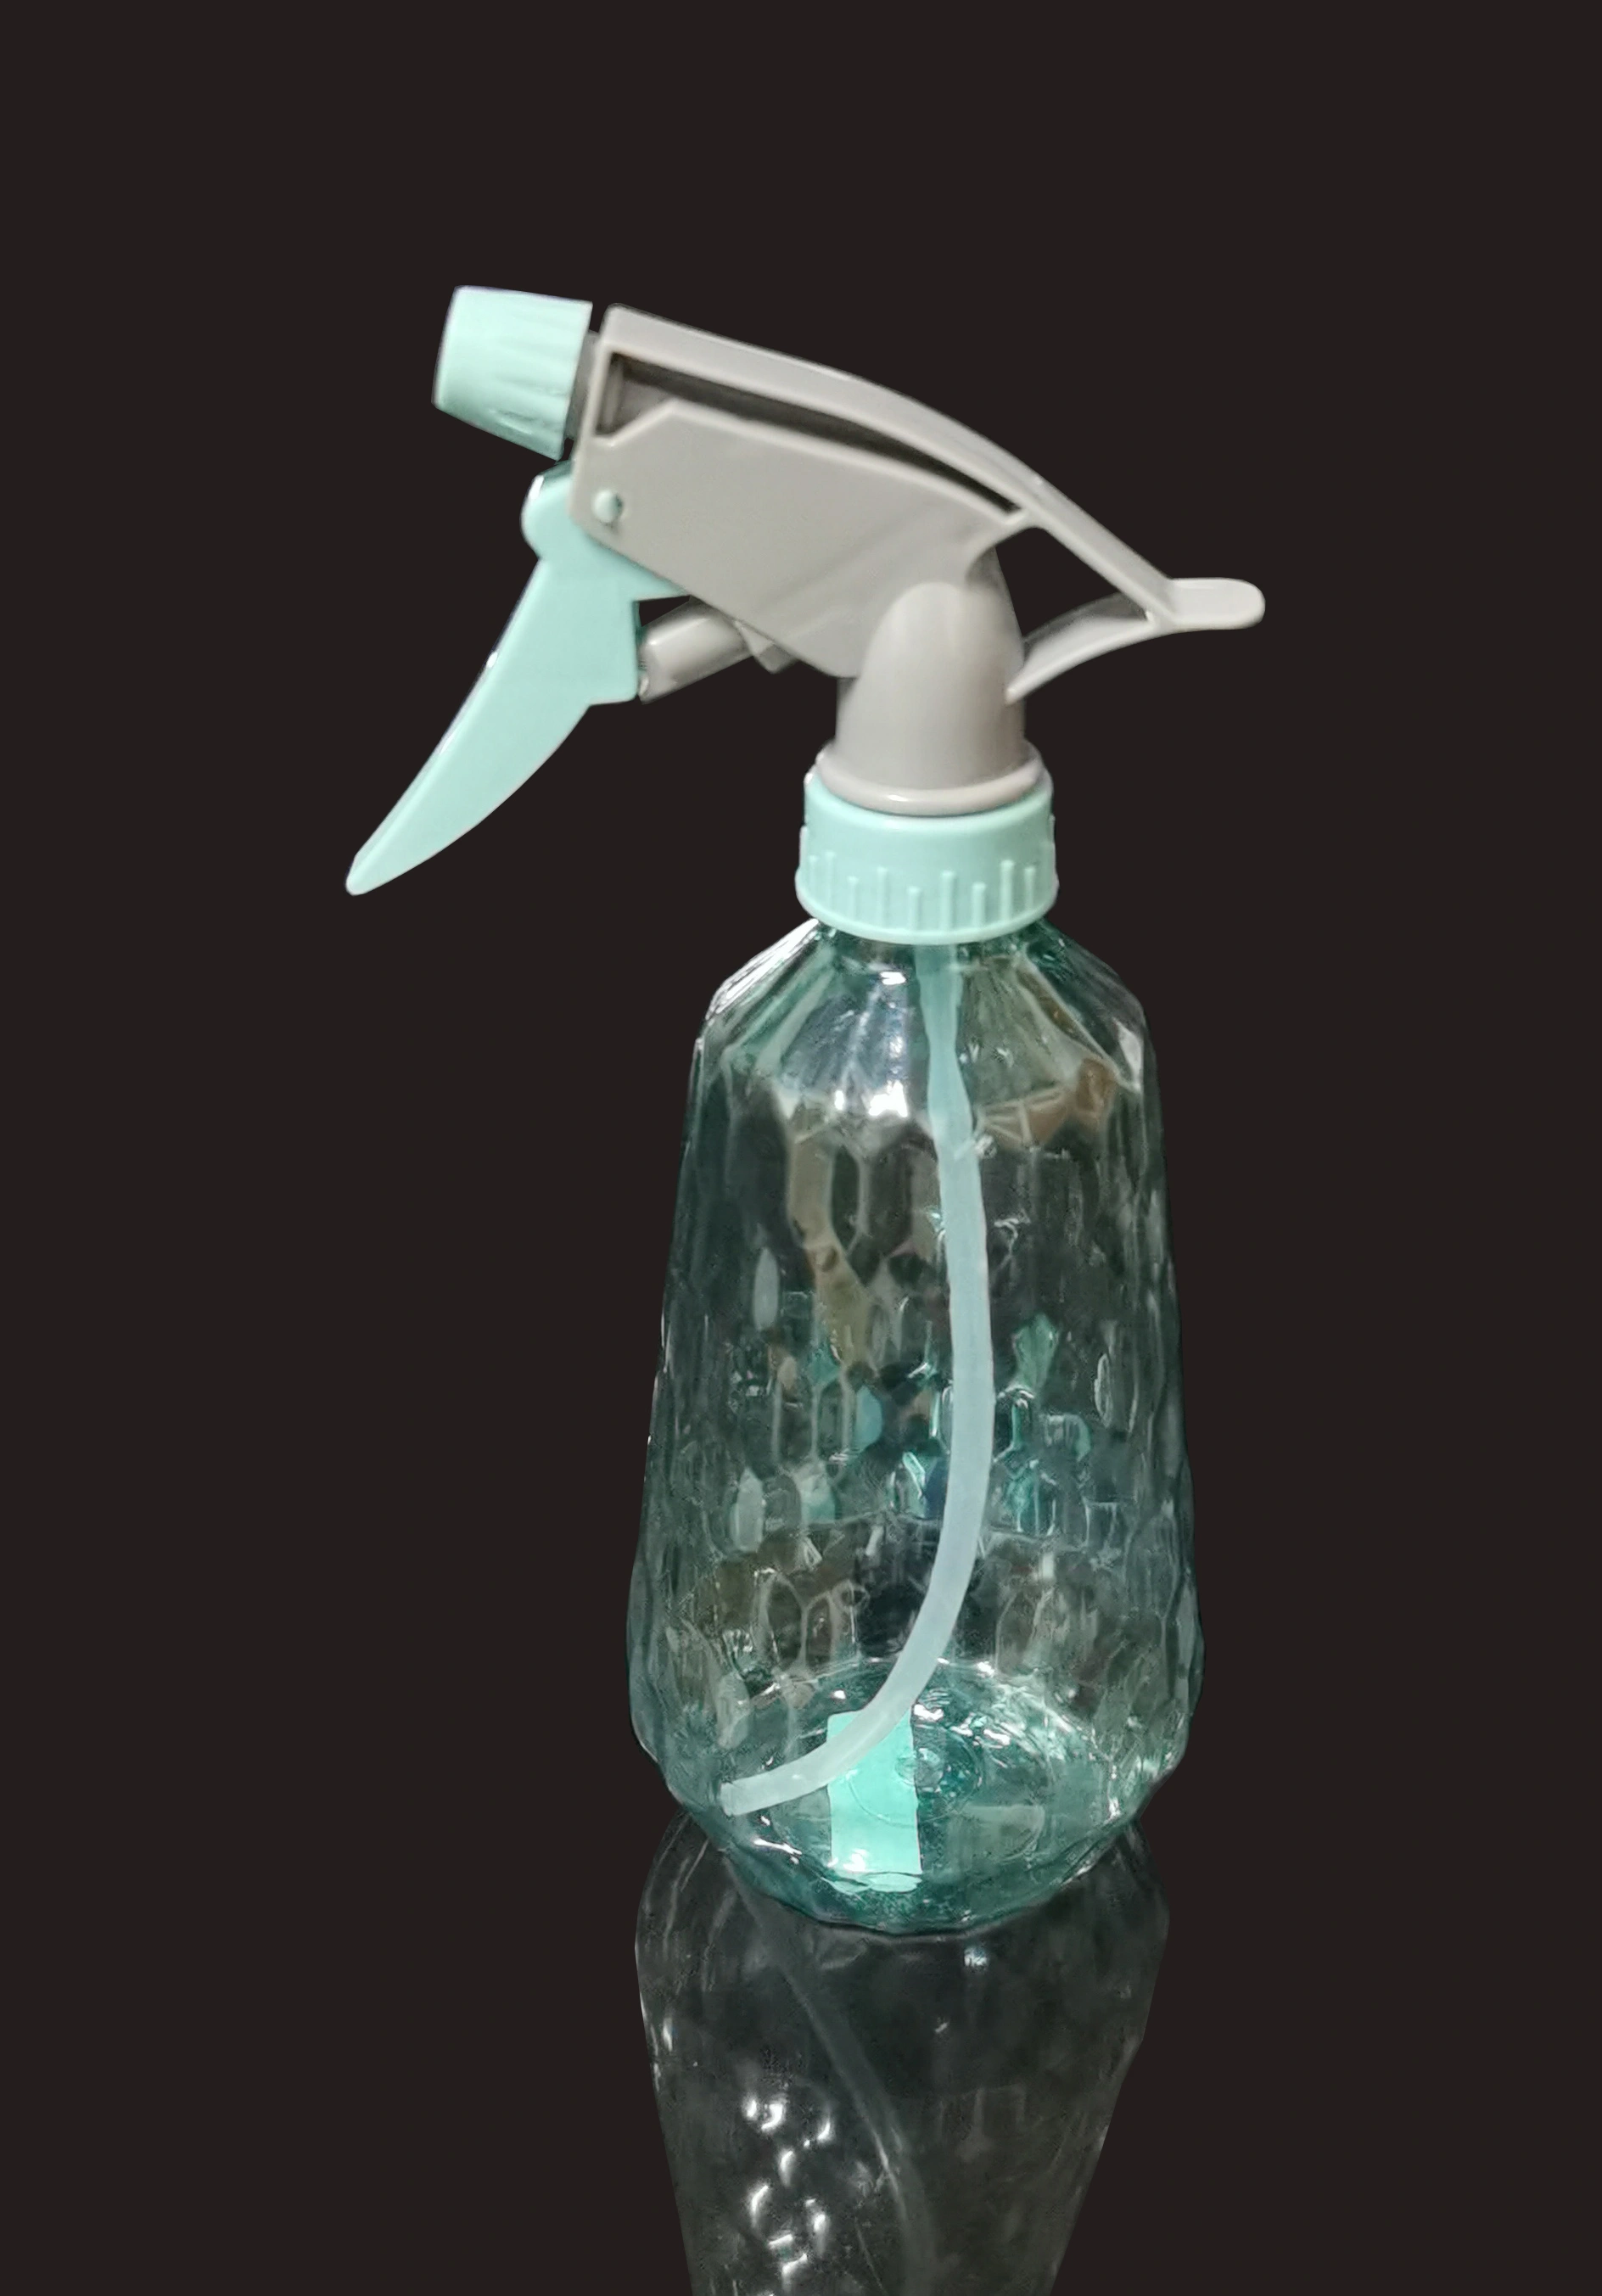 Trigger sprayer bottle